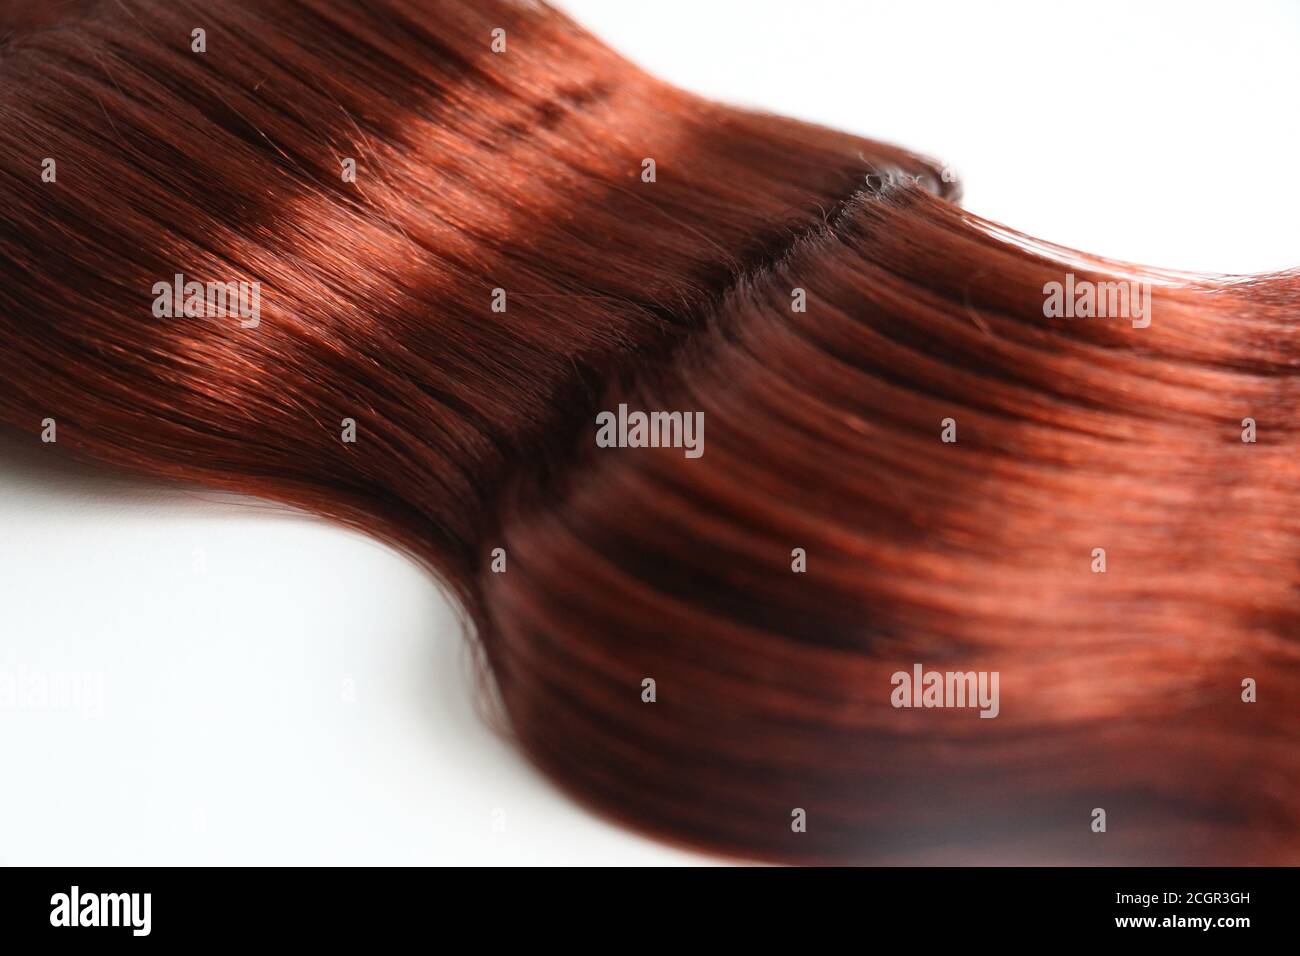 pièce de cheveux ondulée red auburn isolée sur fond blanc Banque D'Images